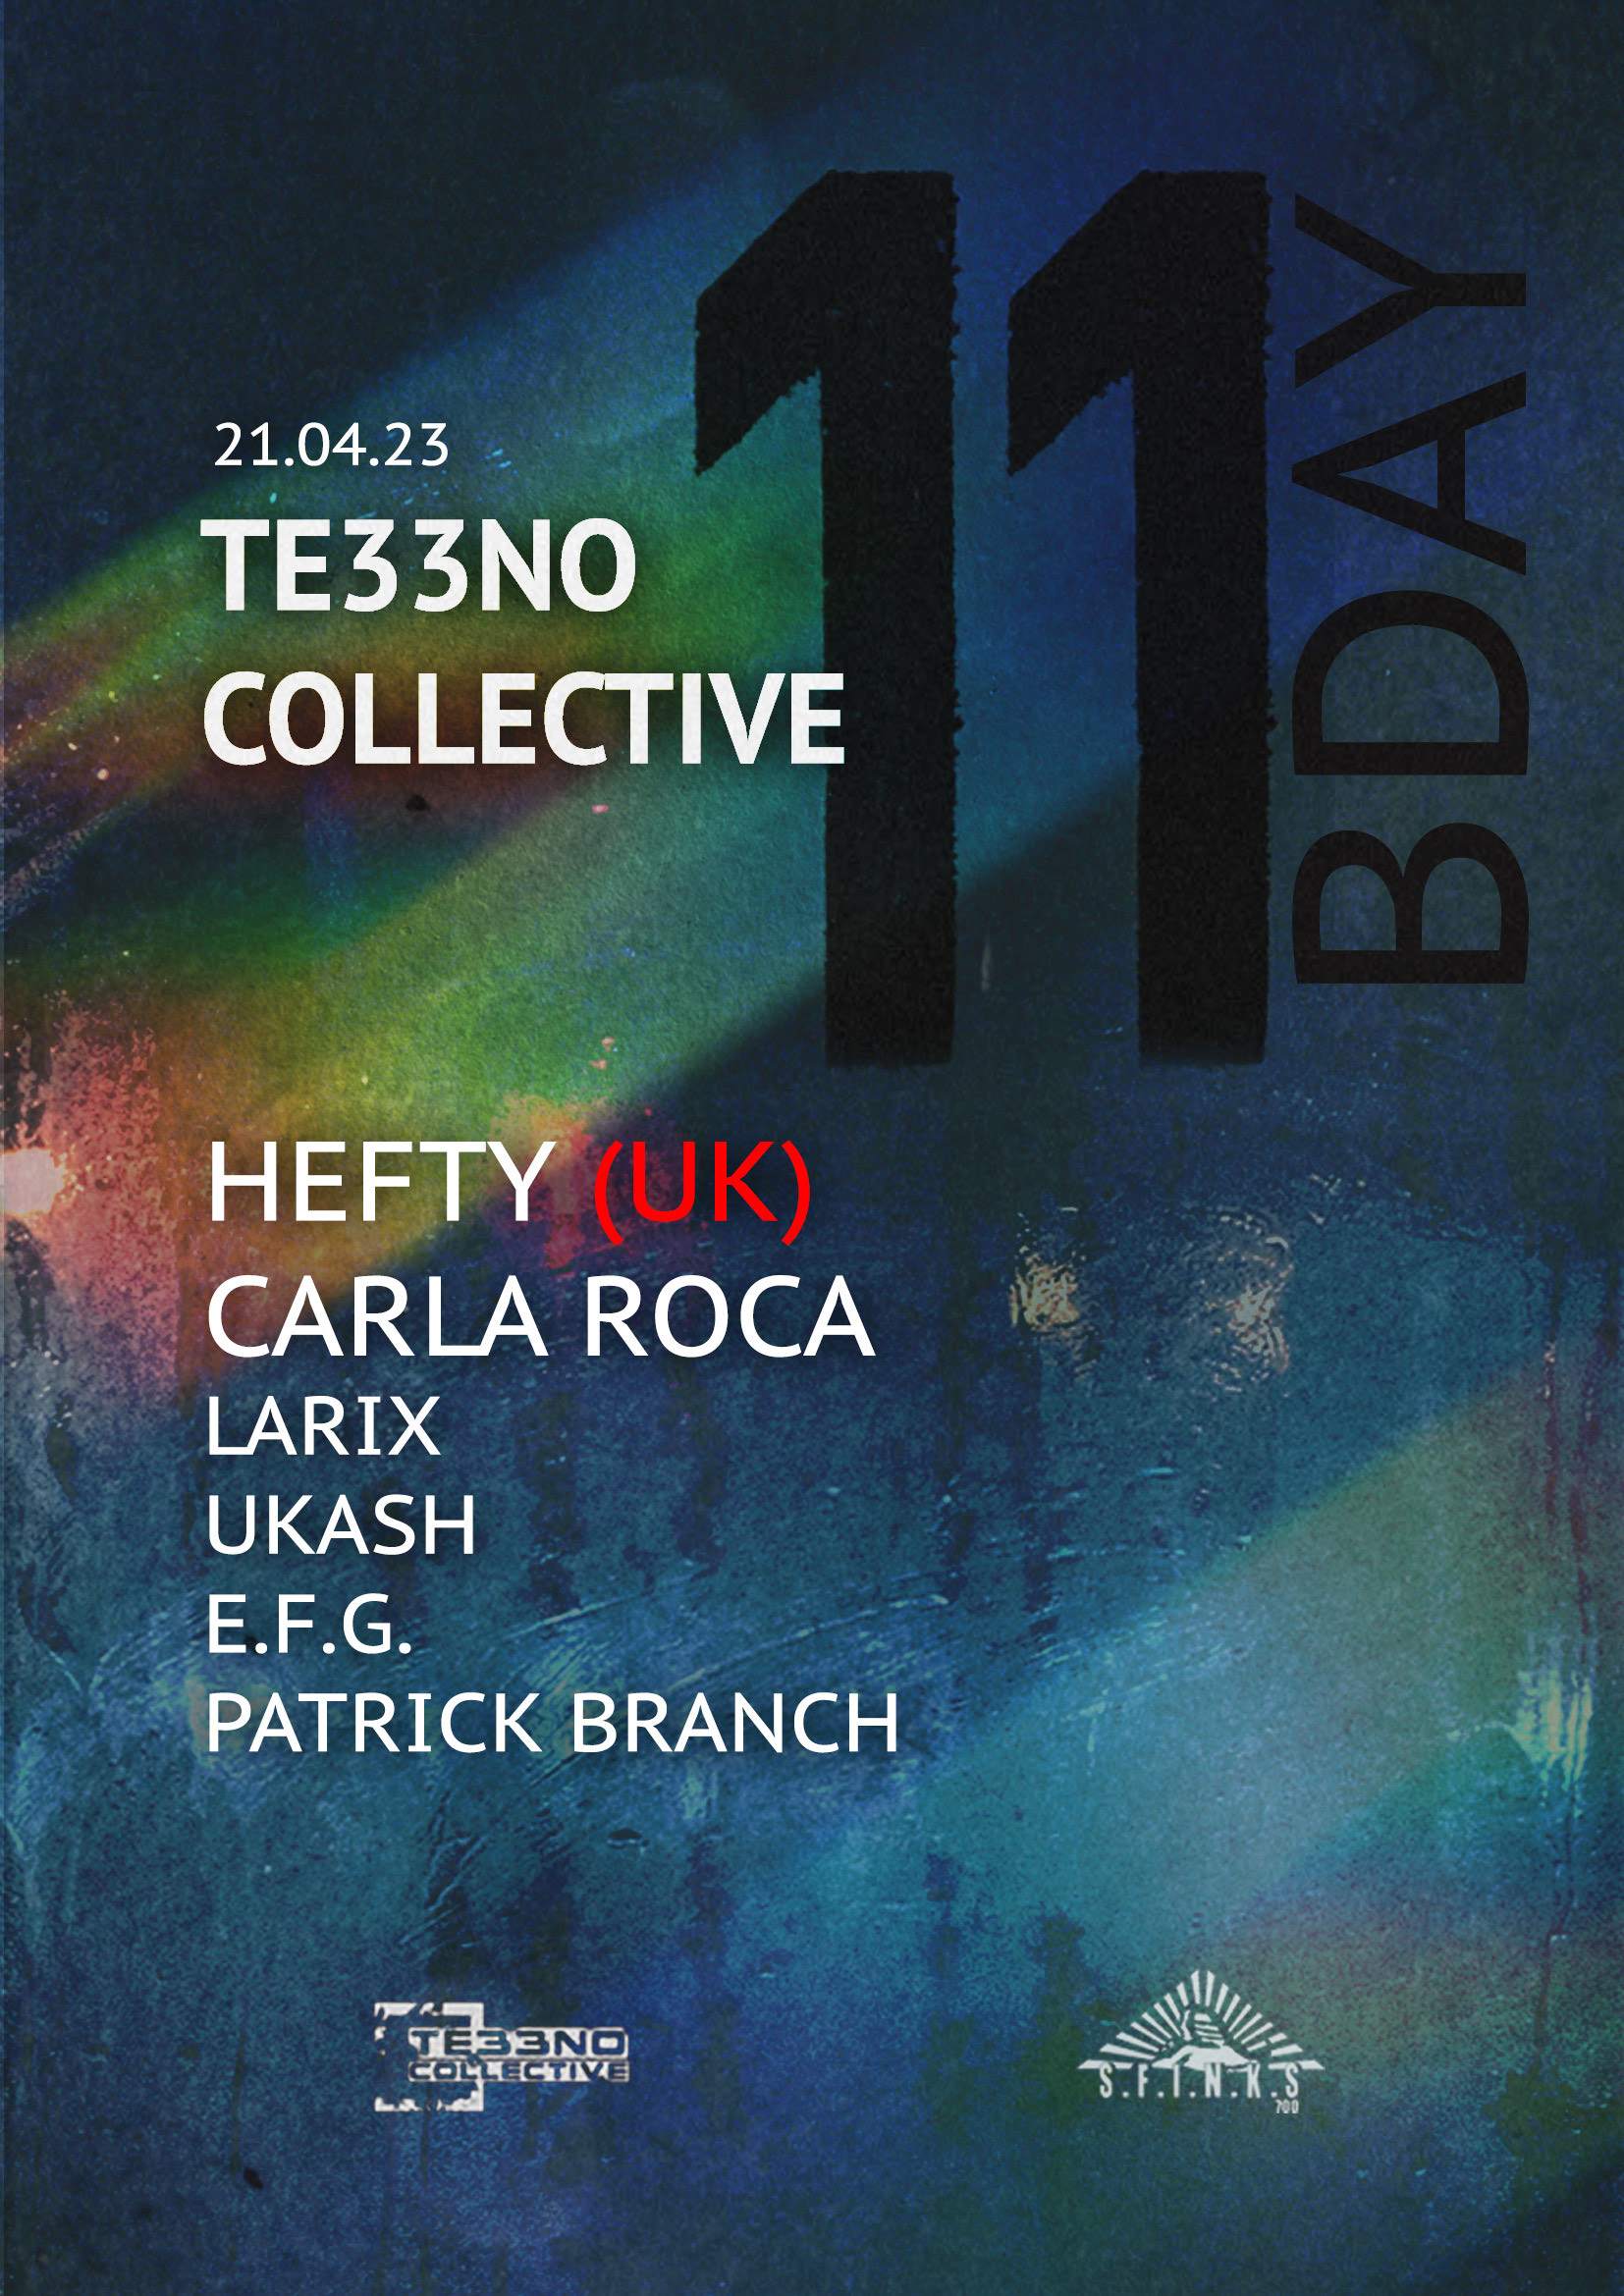 11 Urodziny Te33no Collective / Hefty / Carla Roca - フライヤー表